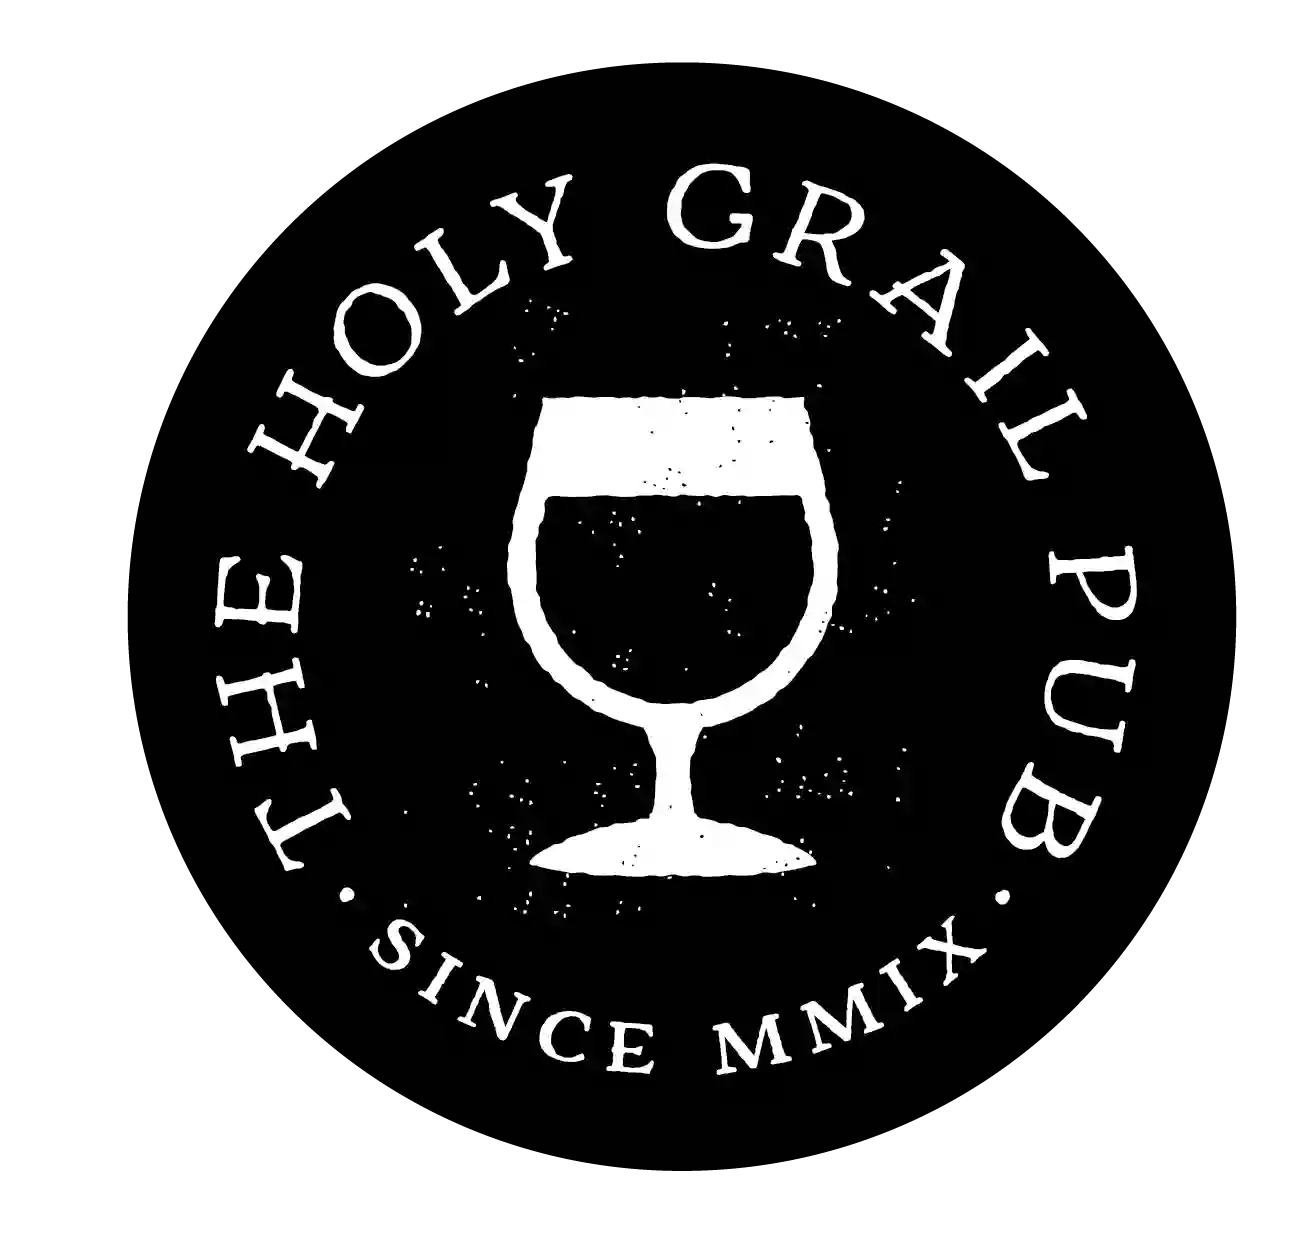 Holy Grail Pub